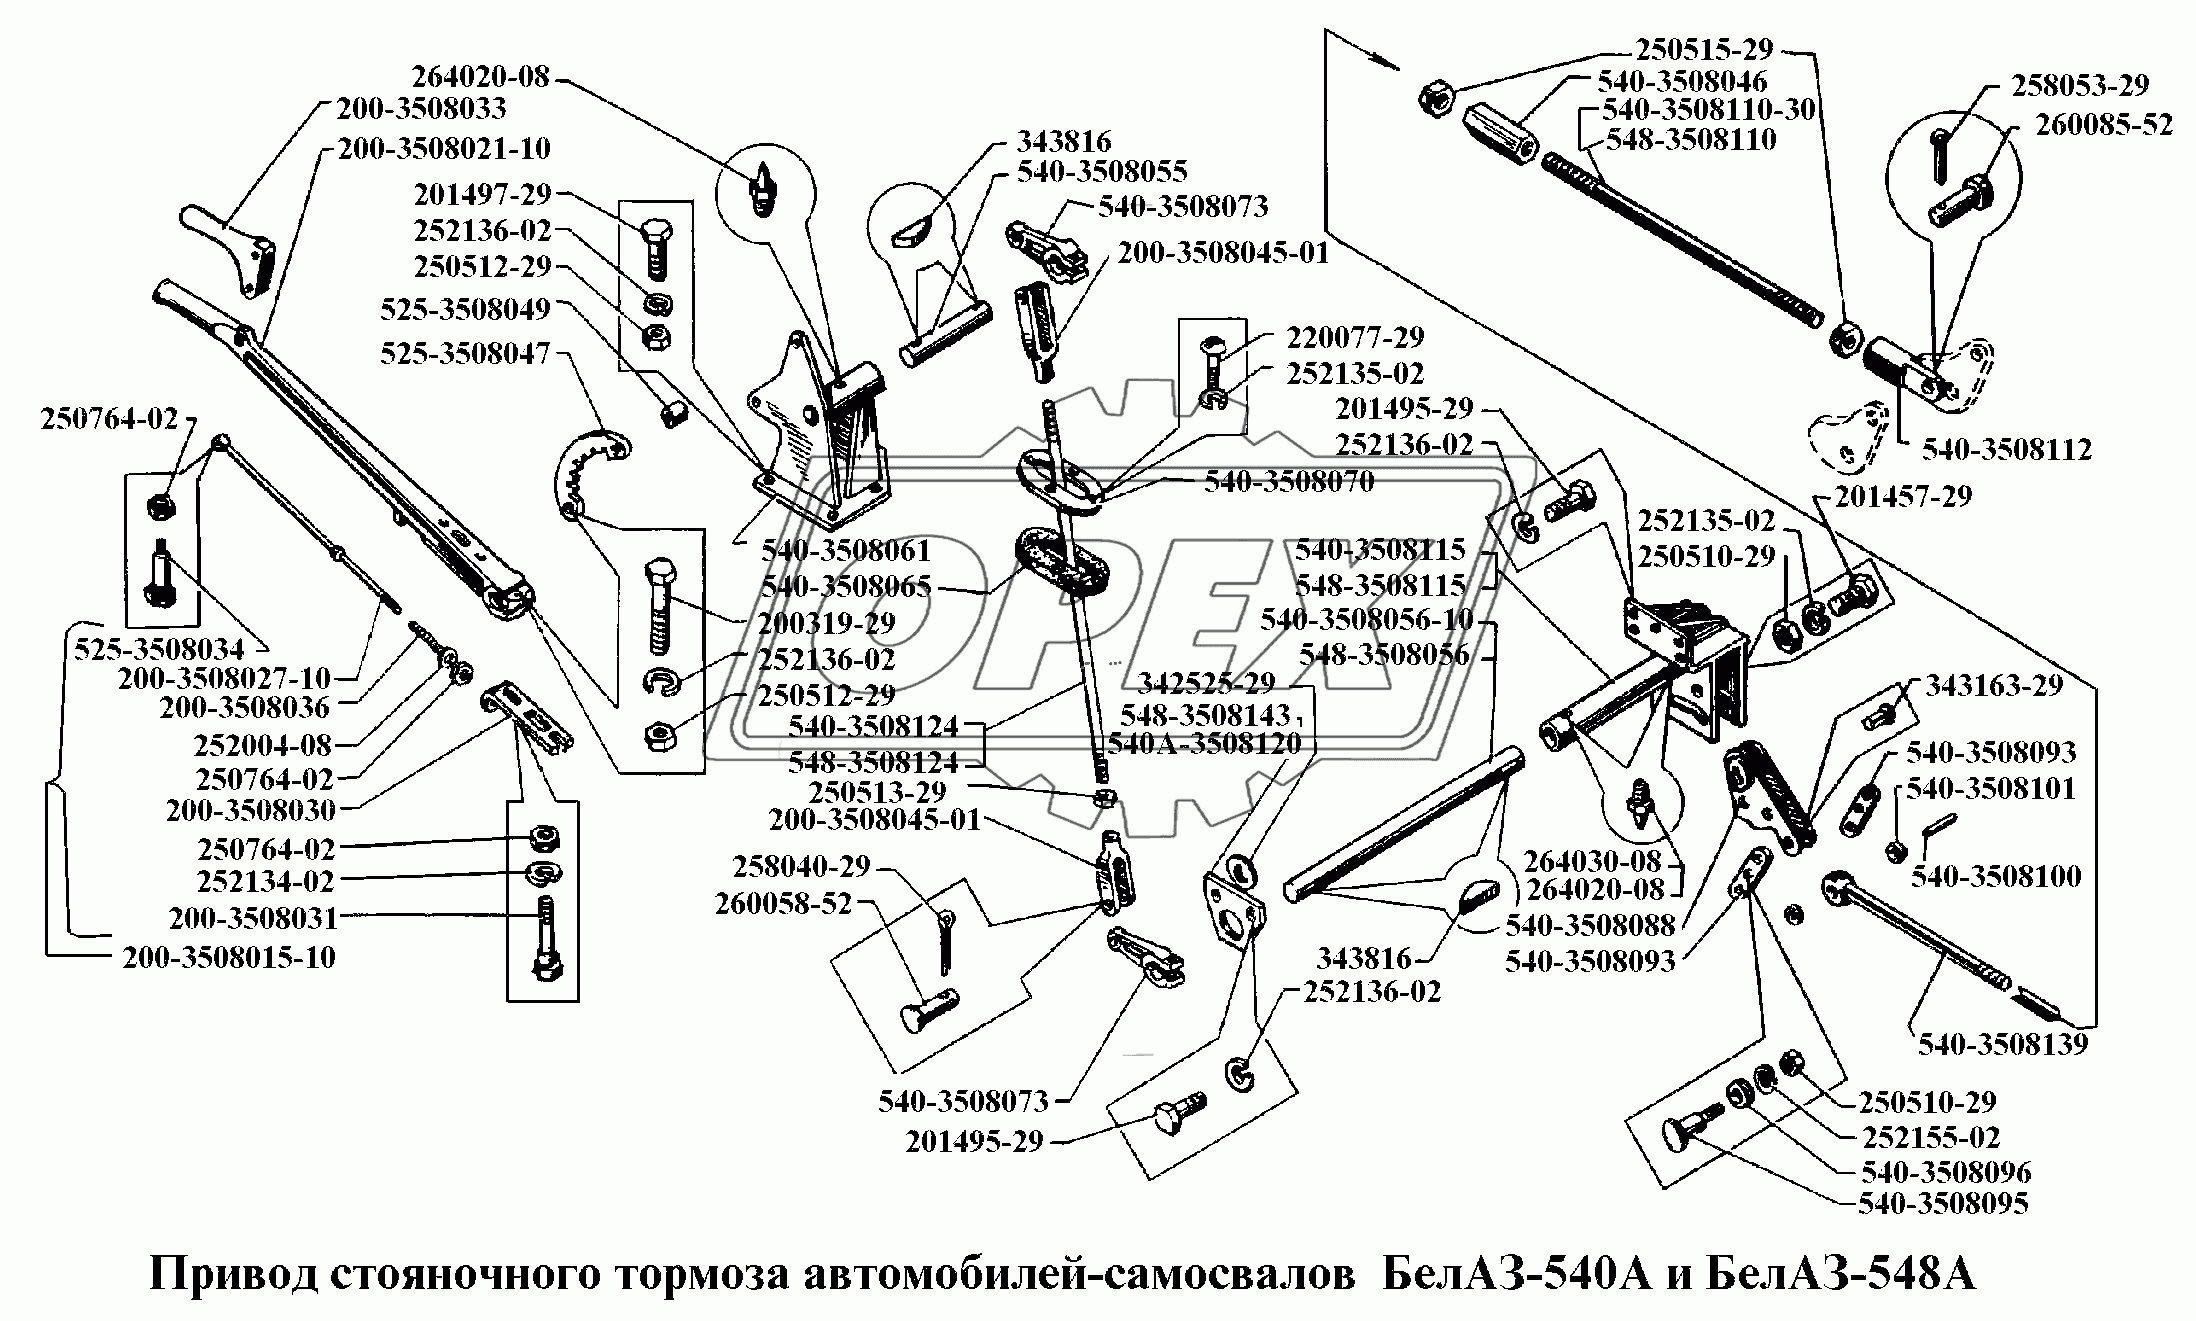 Привод стояночного тормоза автомобилей-самосвалов БелАЗ-540А и БелАЗ-548А